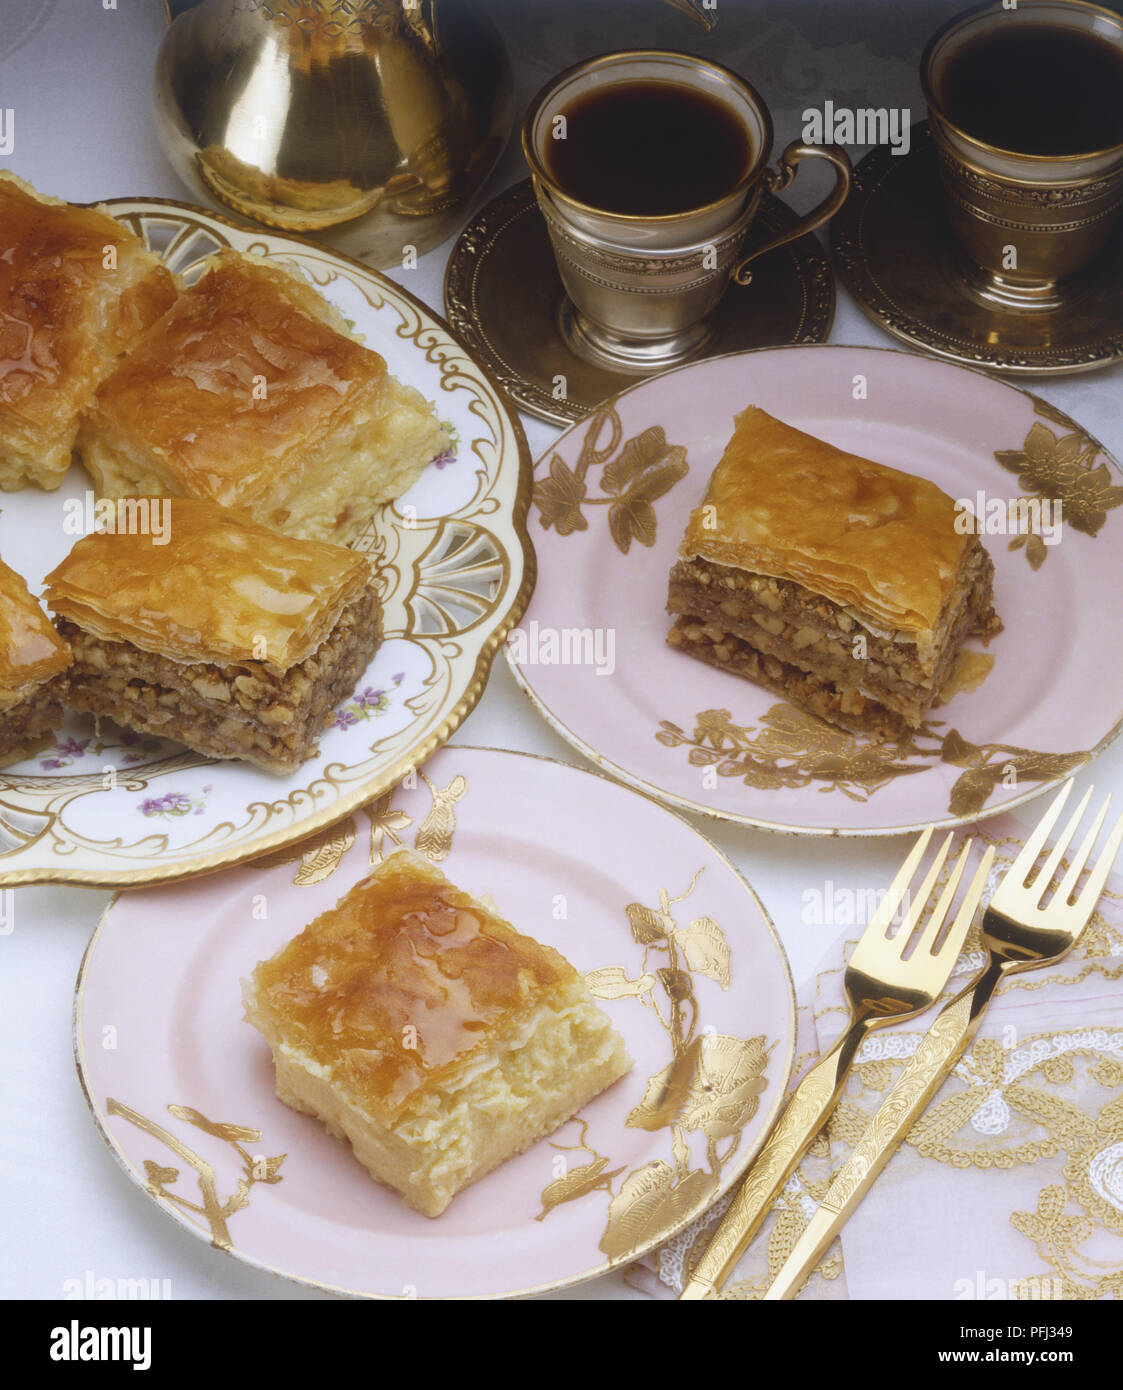 Morceaux de gâteau aux pommes servi sur des plaques, café servi dans des coupes en argent Banque D'Images